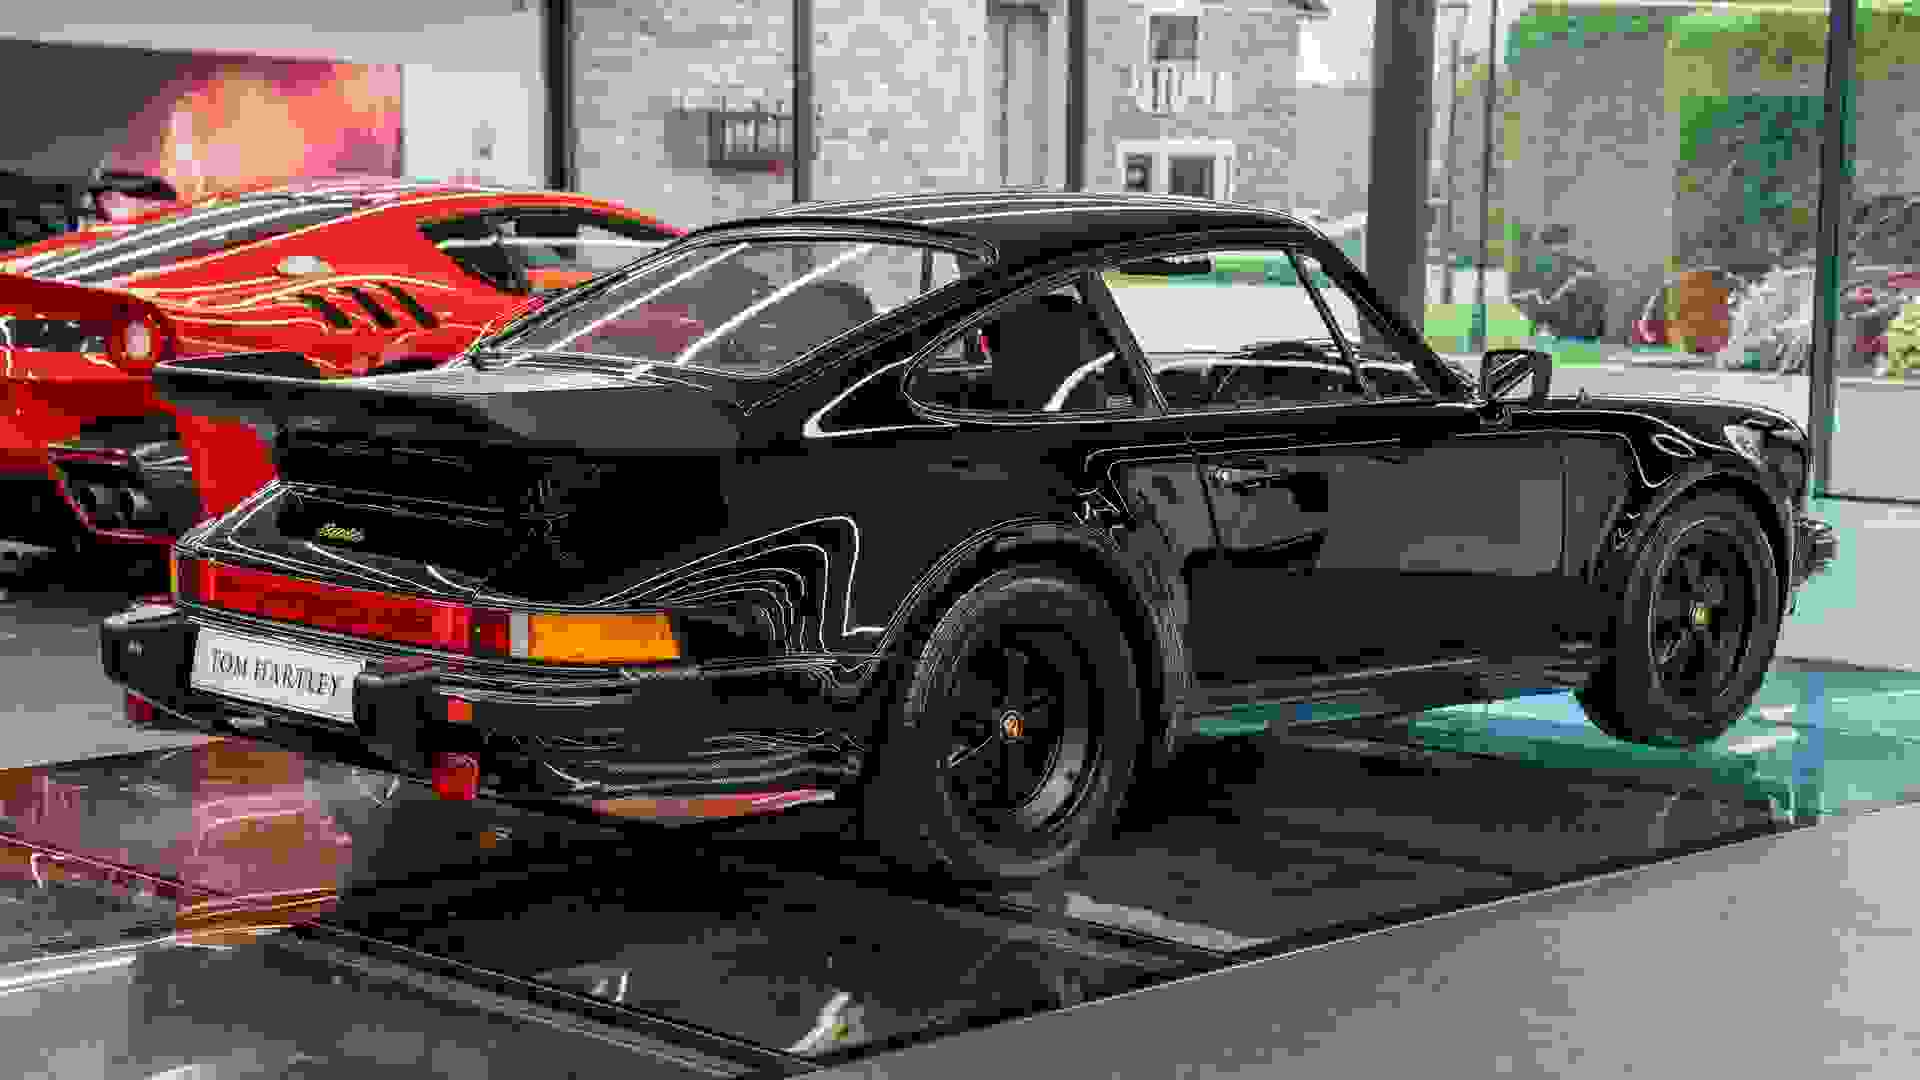 Porsche 911 Photo 8a4e8e1e-d6ed-4ce2-9cb8-3bcf8fc0c4d9.jpg